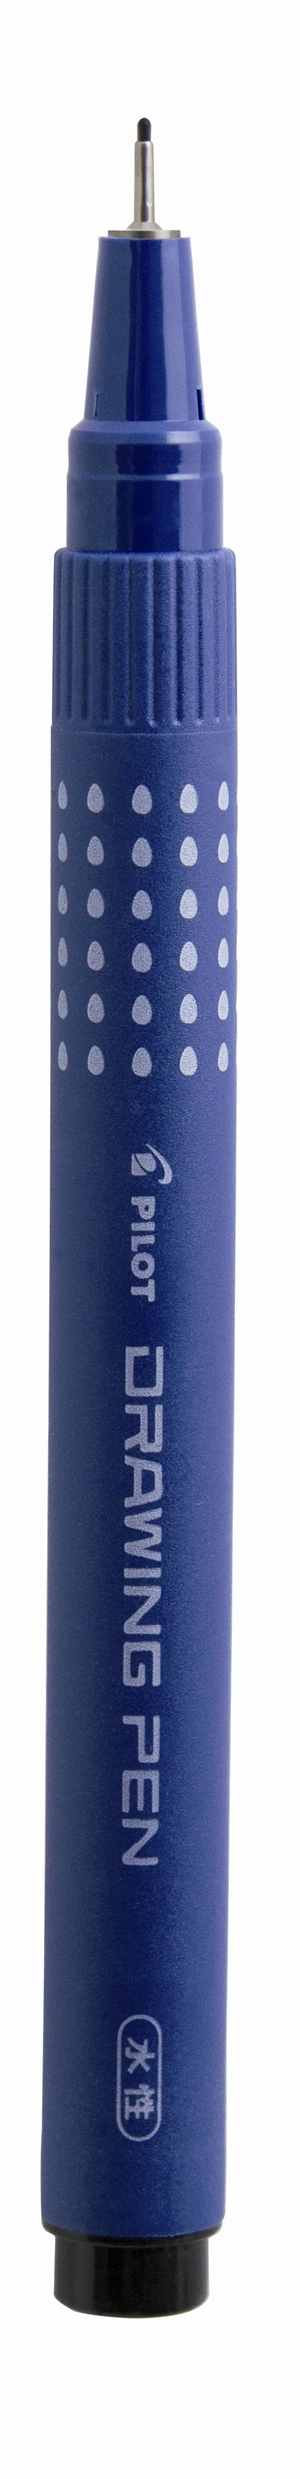 Pilot Filtpenn med hette, tegnepenn 0,3mm, svart